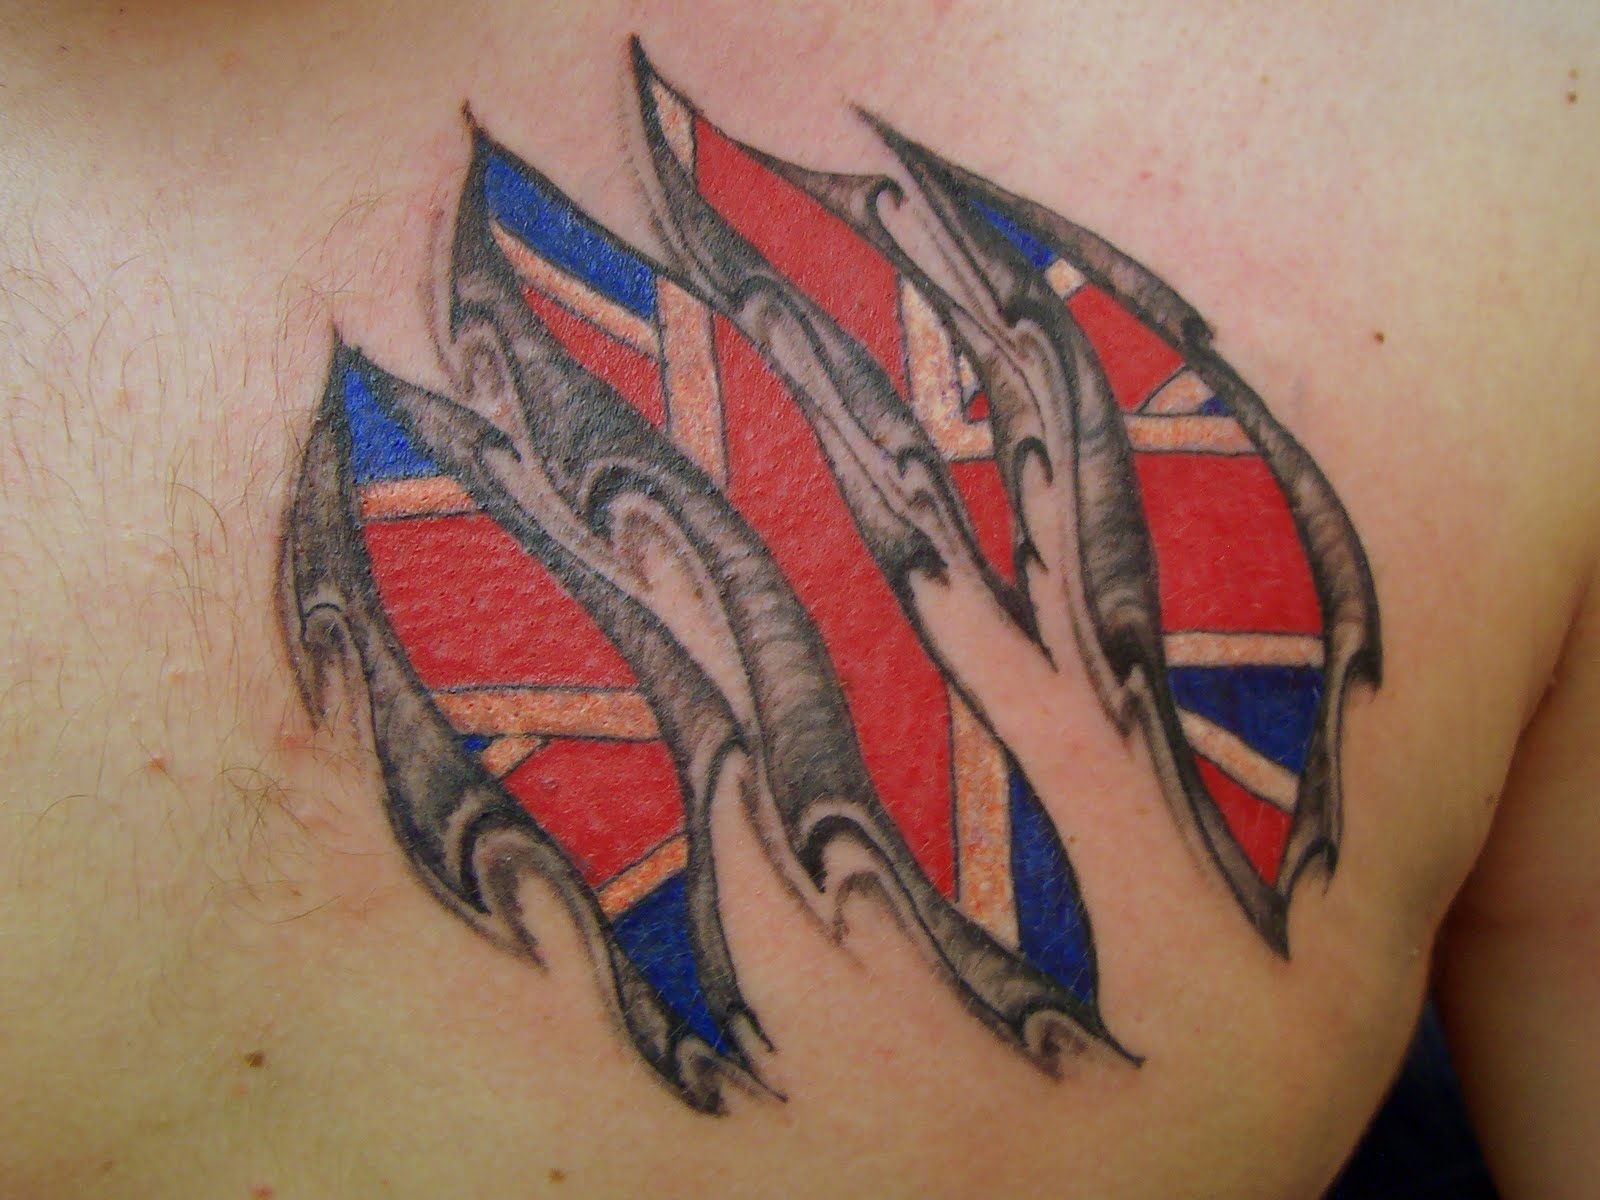 tattoo disasters: Flag Tattoos